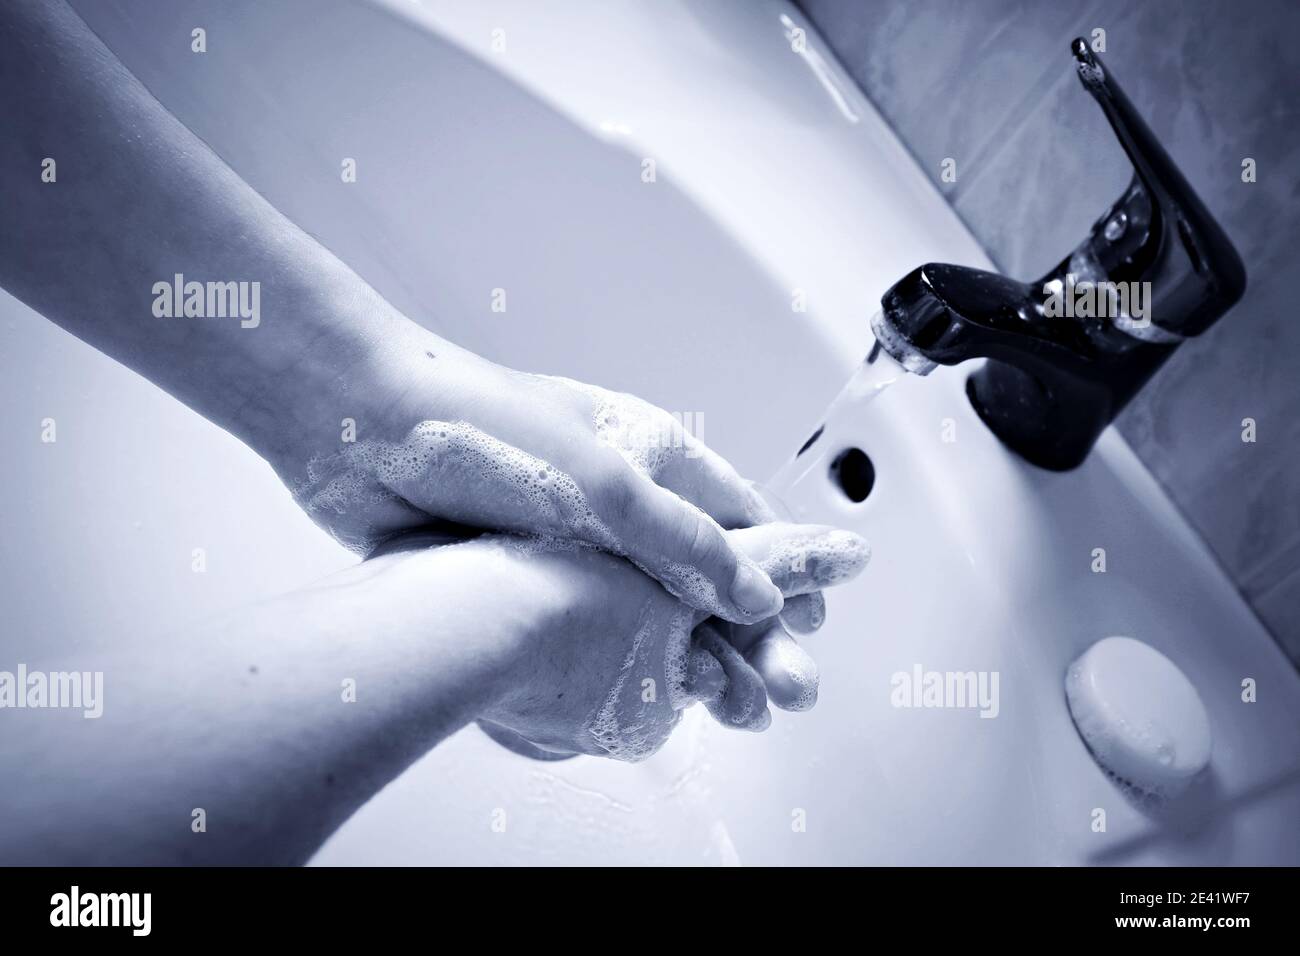 Protocollo di disinfezione sanitaria. Donna che le lava le mani con sapone antisettico e acqua calda per distruggere i germi e i batteri del virus COVID-19. Foto Stock